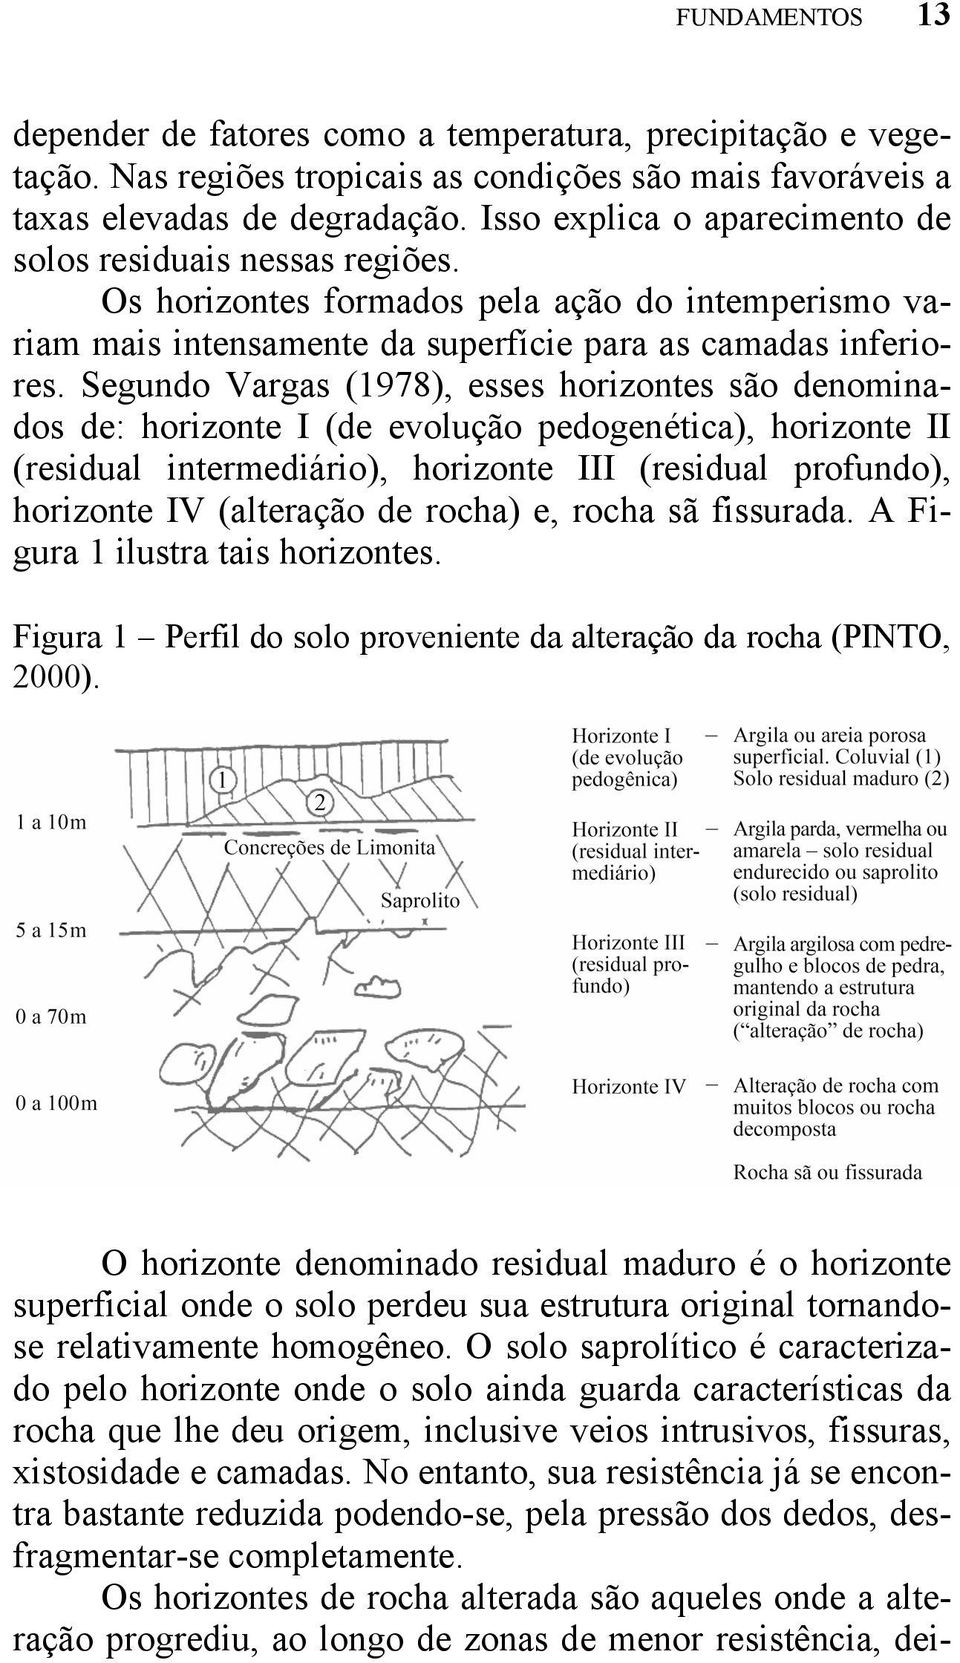 Segundo Vargas (1978), esses horizontes são denominados de: horizonte I (de evolução pedogenética), horizonte II (residual intermediário), horizonte III (residual profundo), horizonte IV (alteração